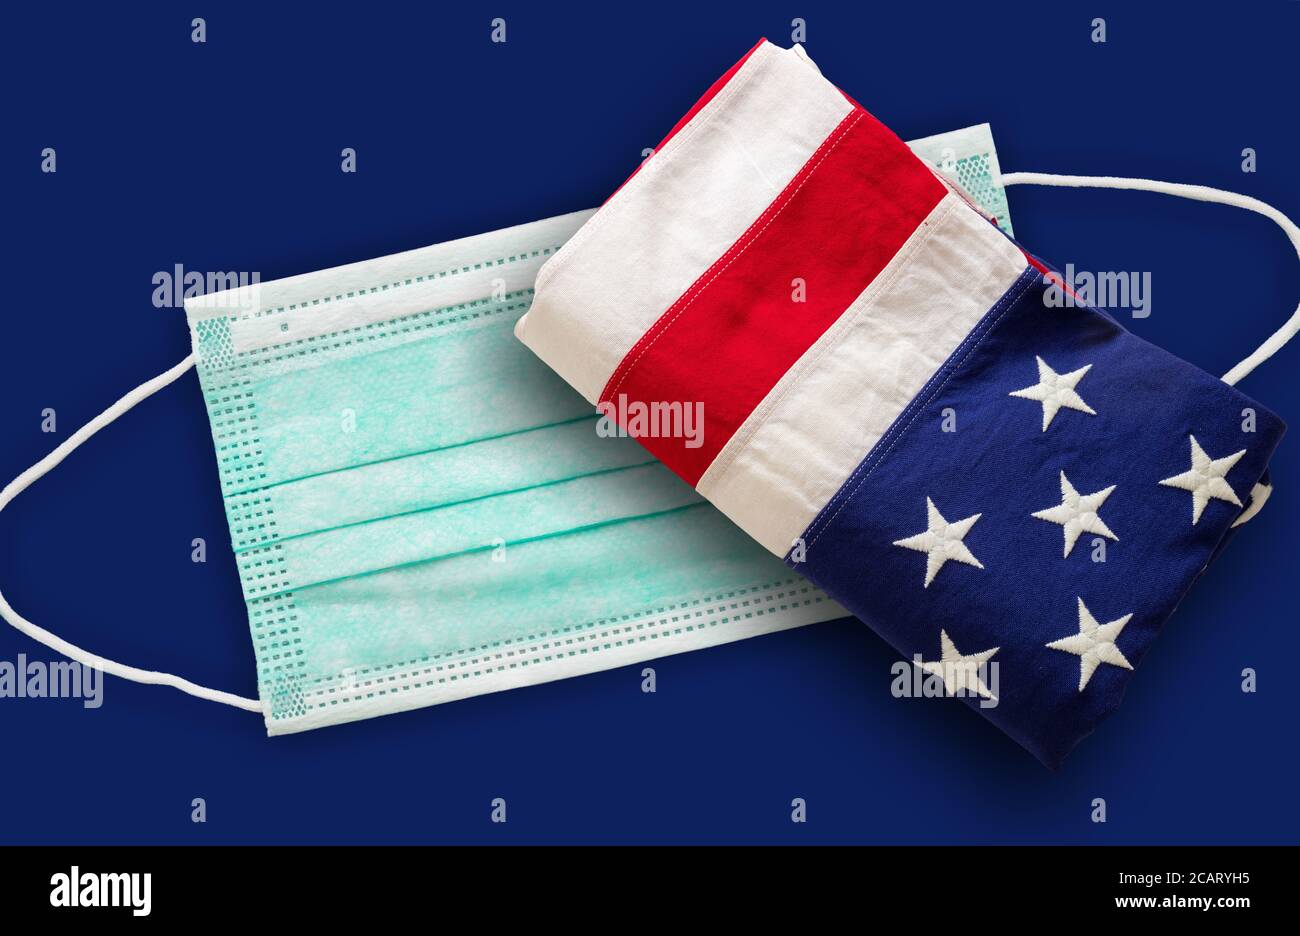 Coronavirus Covid 19 negli Stati Uniti. Maschera medica protettiva e bandiera degli Stati Uniti d'America contro sfondo bleu. Foto Stock